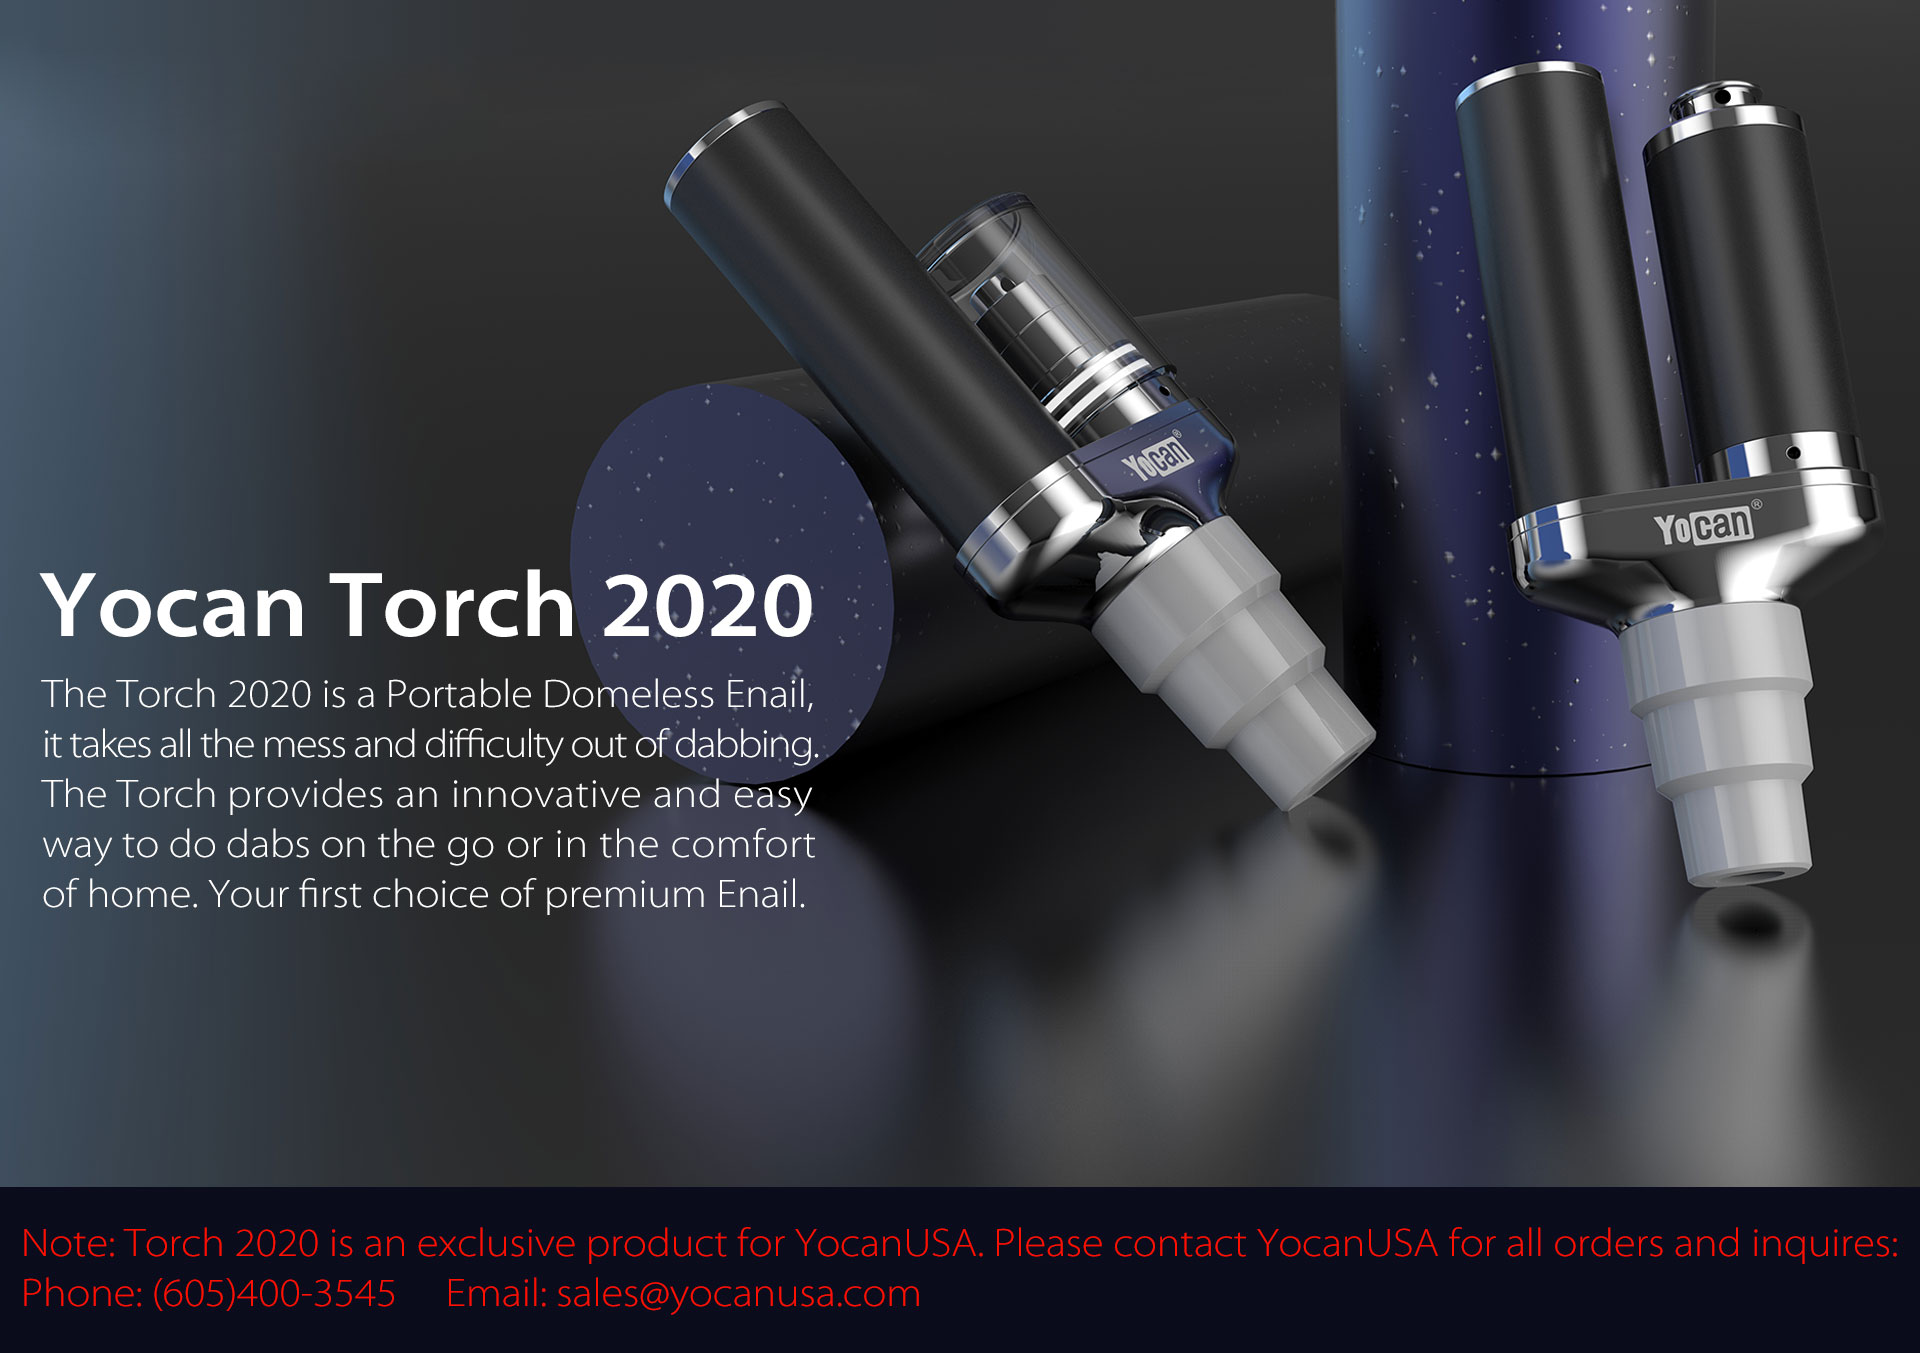 Yocan Torch Enail is a portable domeless enail.